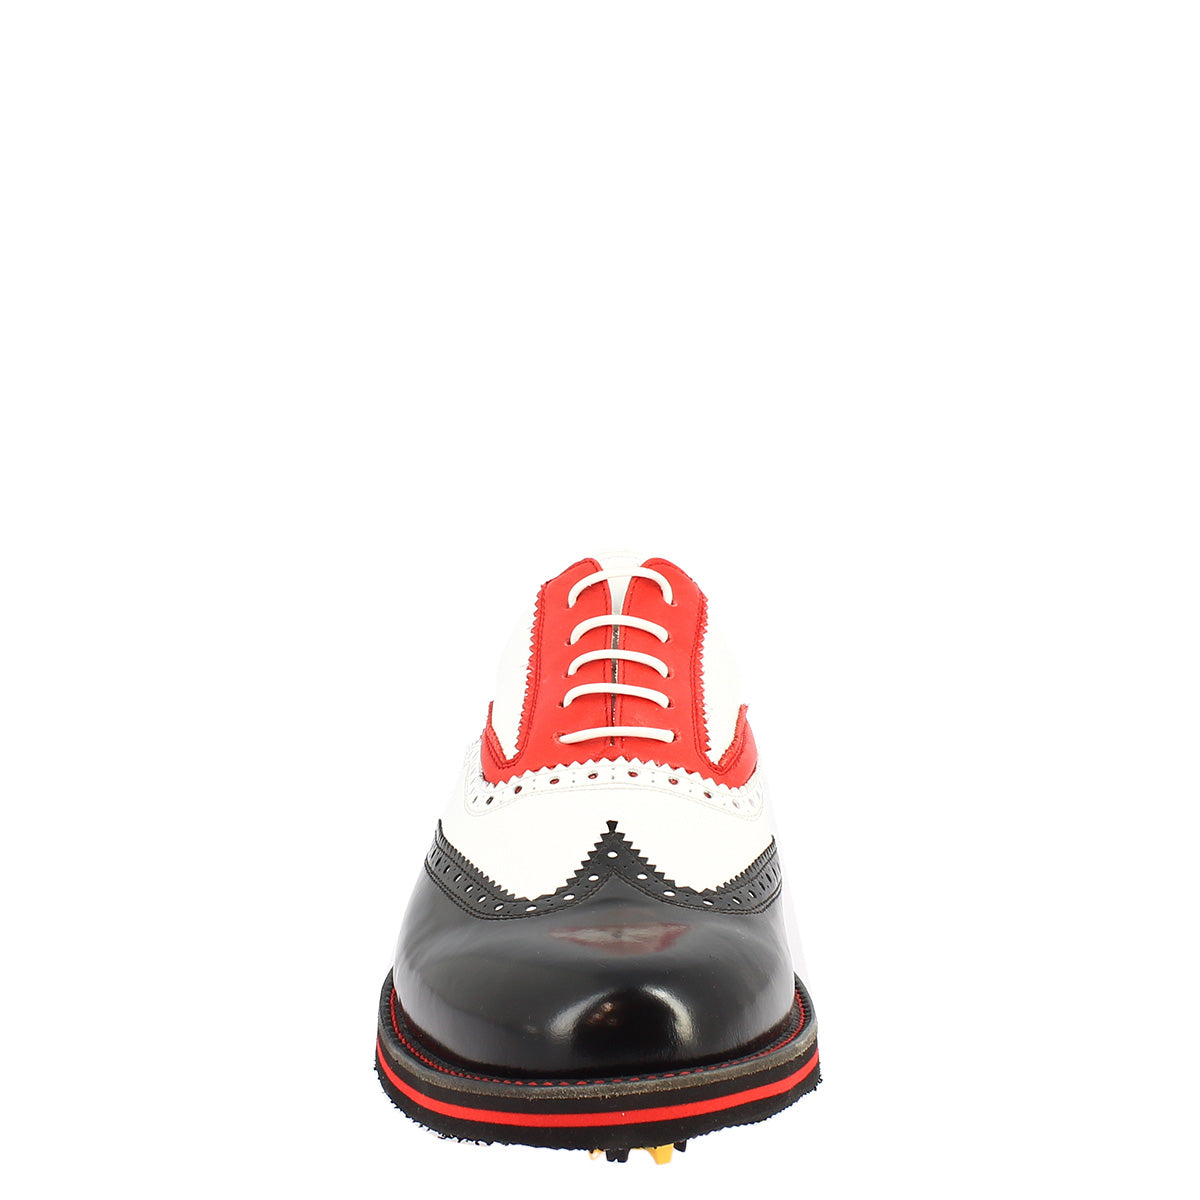 Chaussures de golf pour homme fabriquées à la main en cuir pleine fleur noir blanc rouge